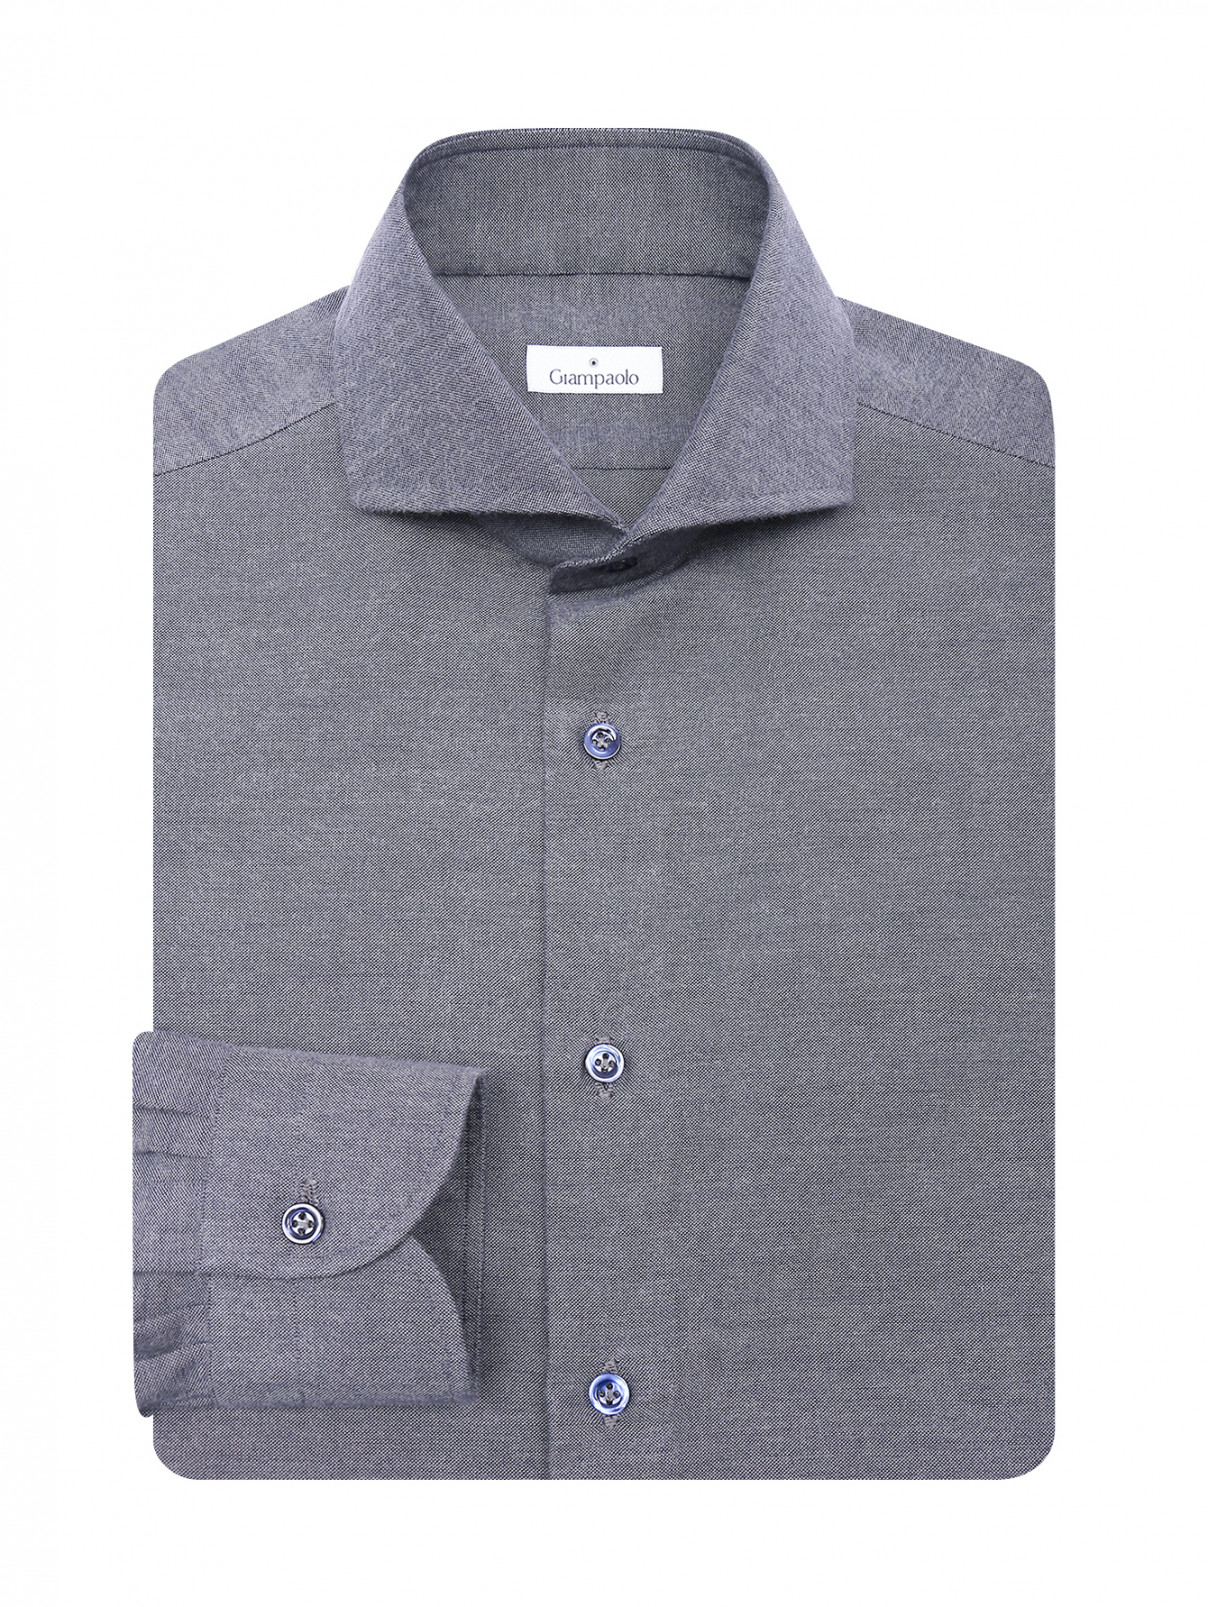 Однотонная рубашка из хлопка Giampaolo  –  Общий вид  – Цвет:  Серый